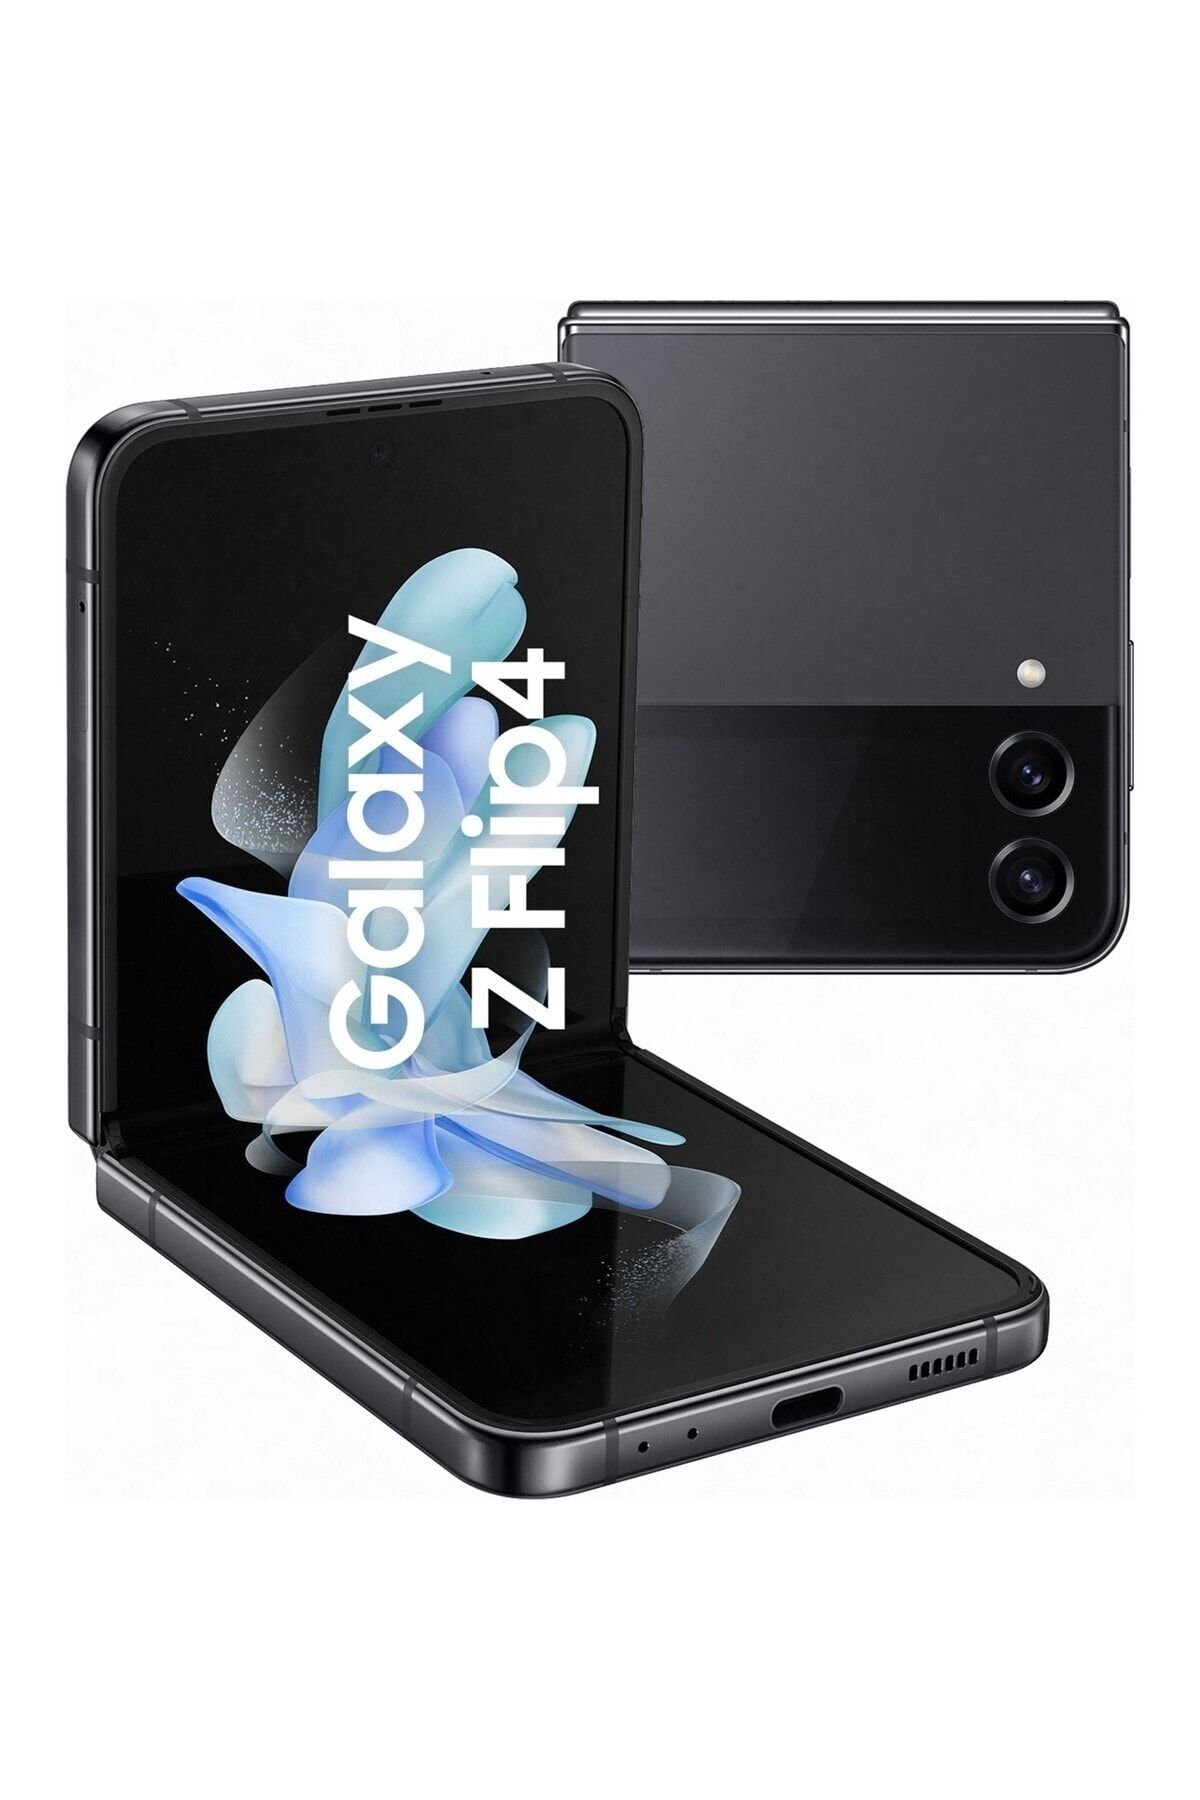 Samsung Yenilenmiş Galaxy Z Flip 4 128 GB Gray Cep Telefonu (1 Yıl Garantili)